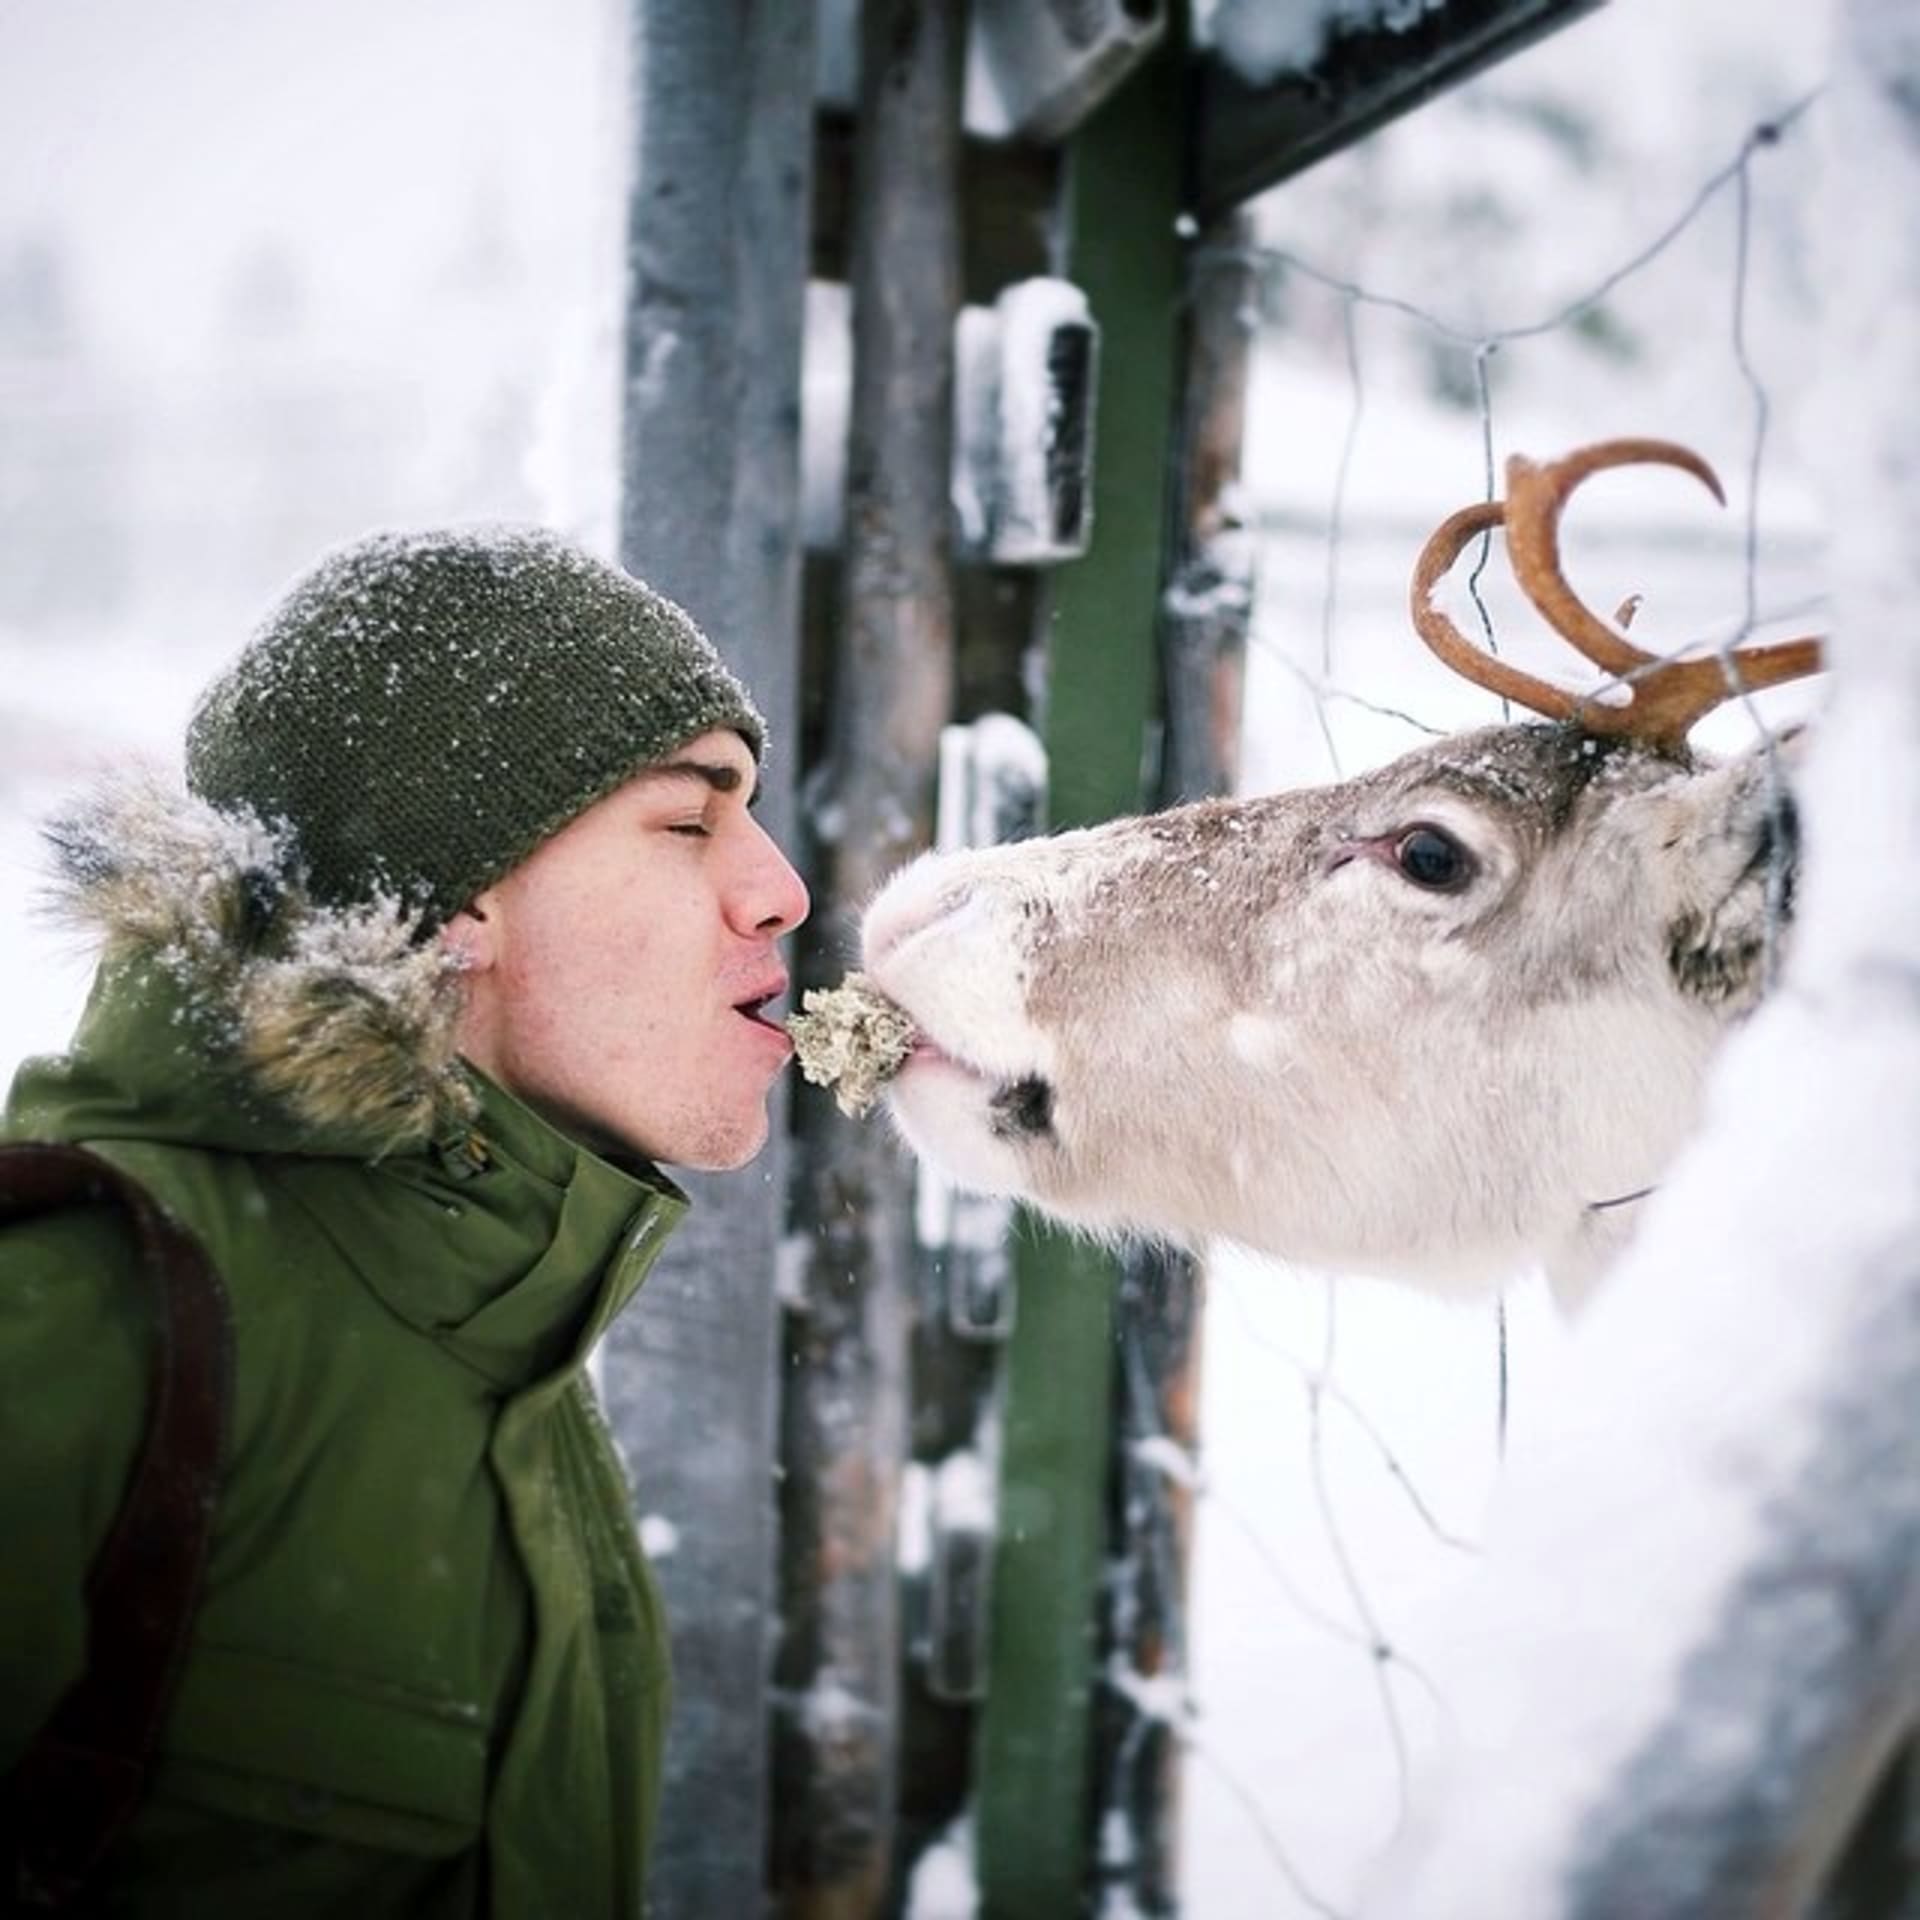 Finský fotograf a lesní zvířata... Dojemná fotogalerie